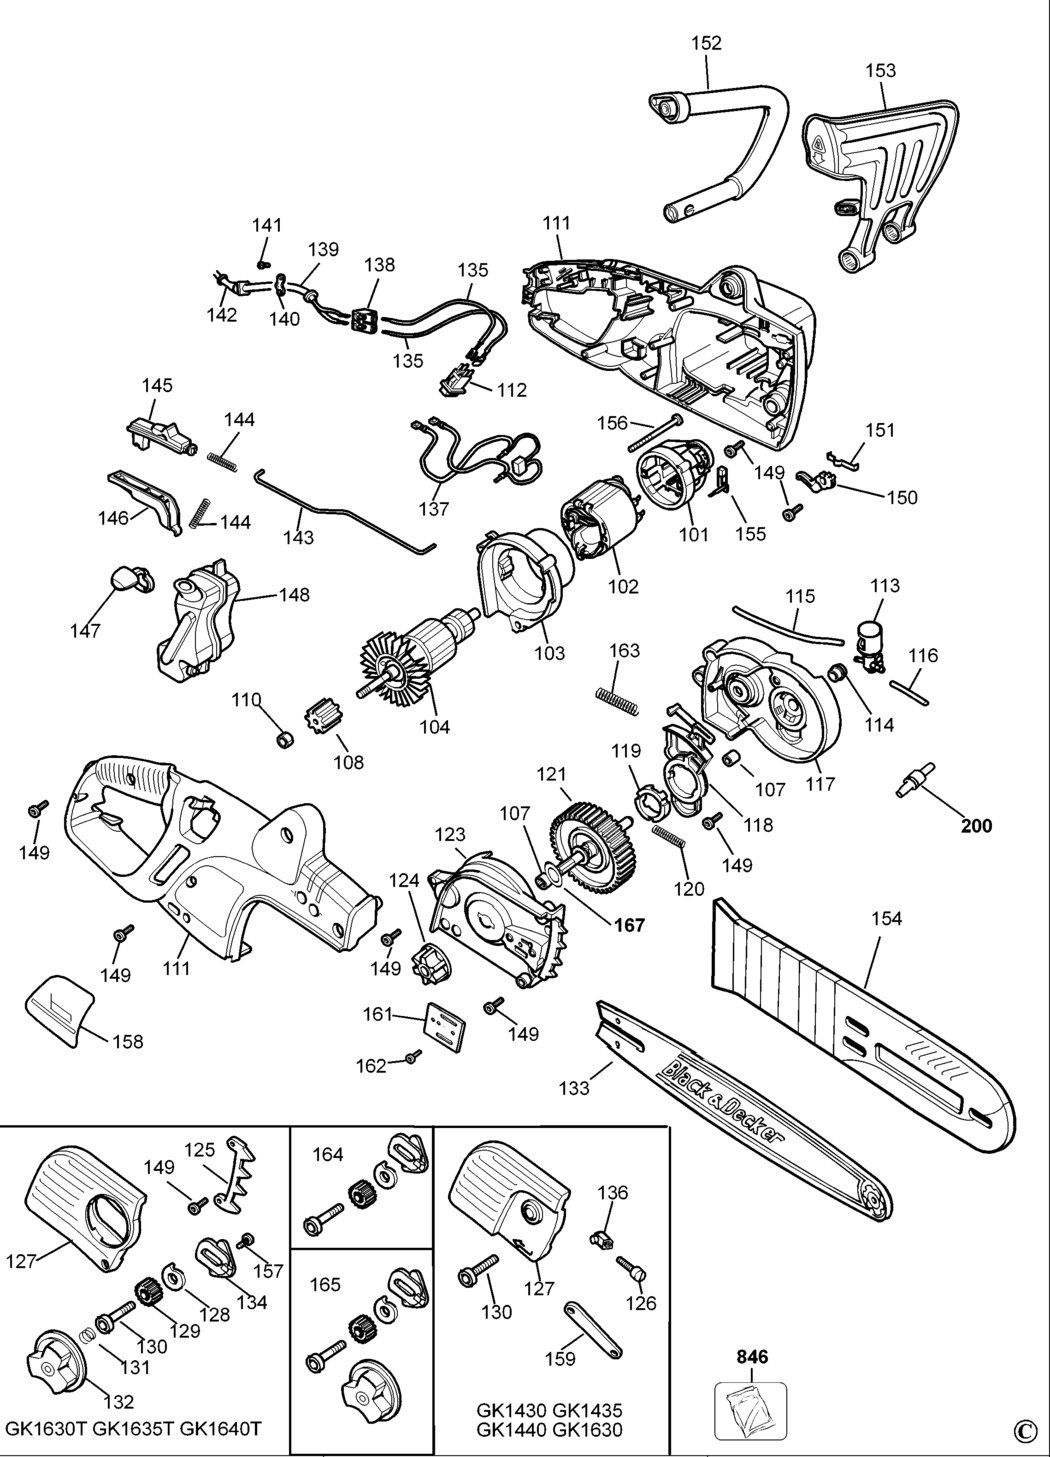 Black & Decker GK1440 Type 1 Chainsaw Spare Parts